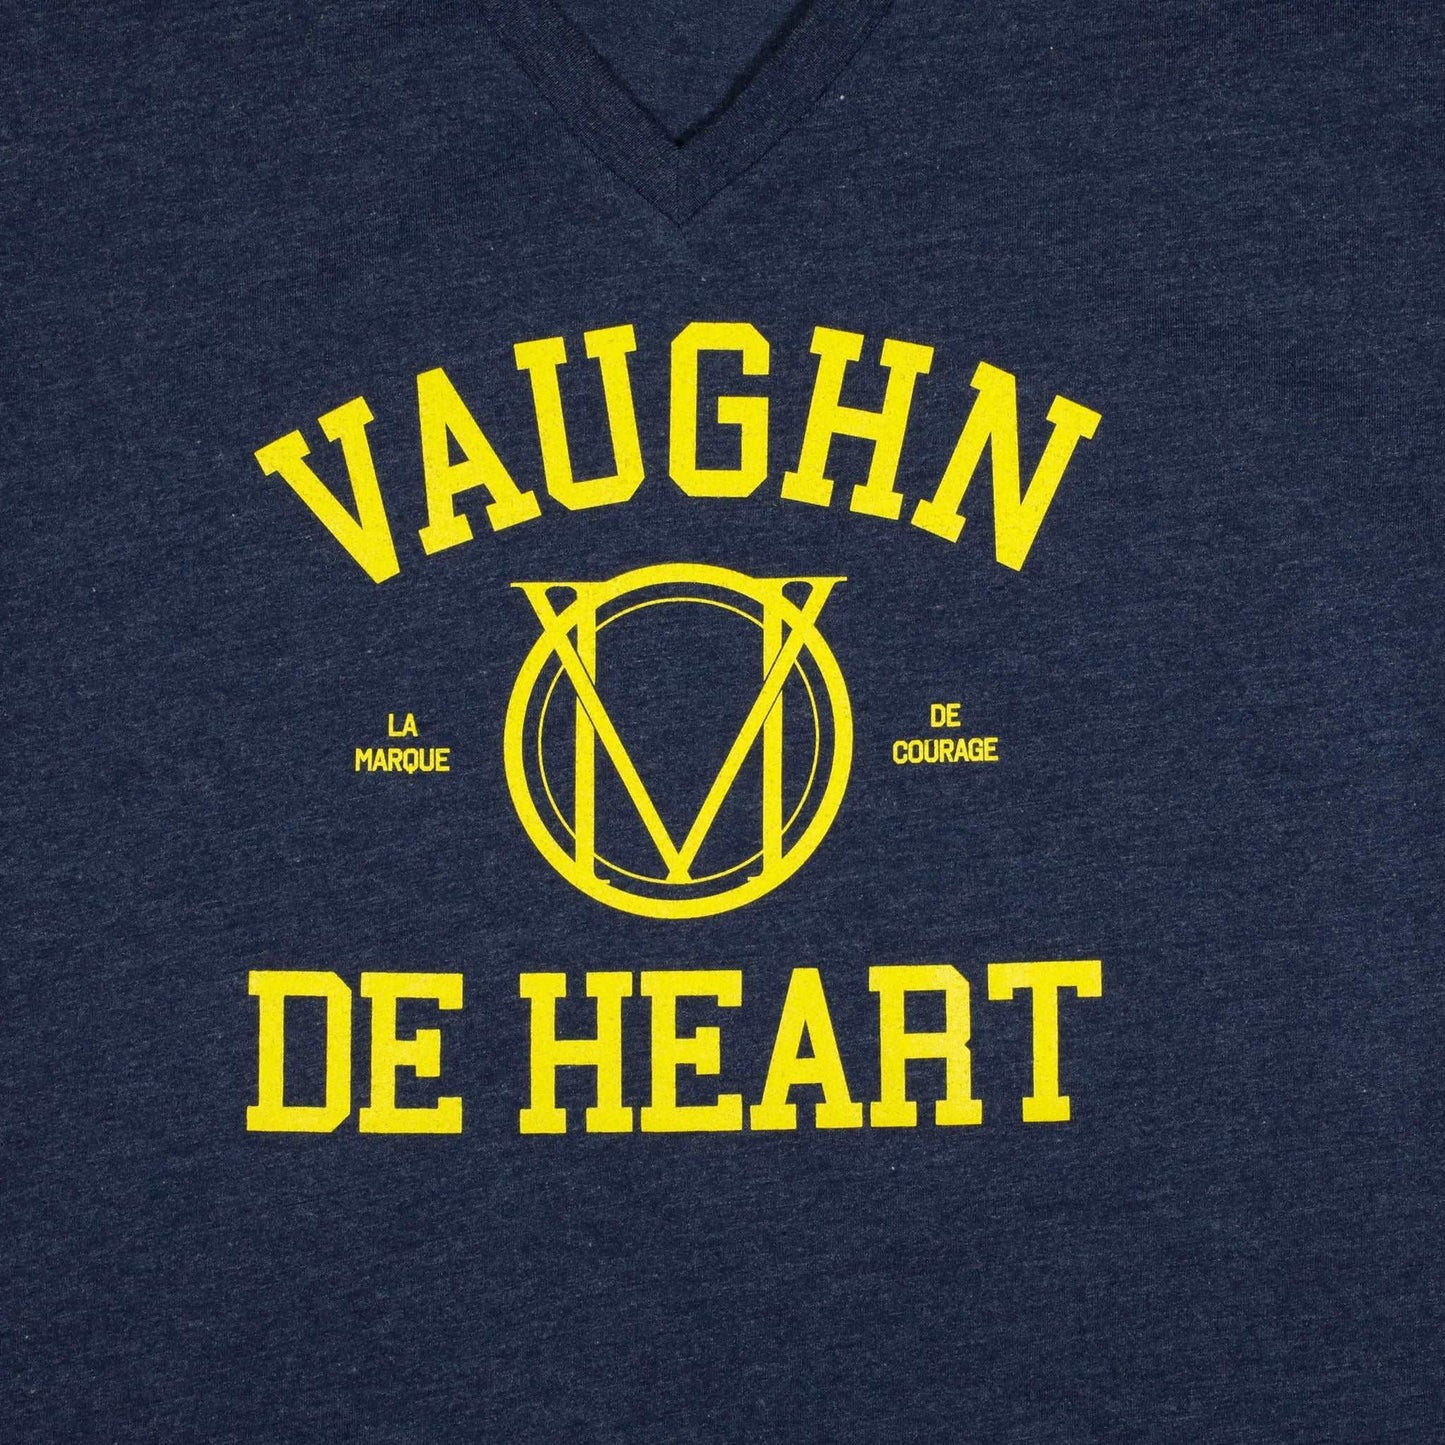 Women's - Wolverine Heather Blue V-Neck T-Shirt-Vaughn de Heart